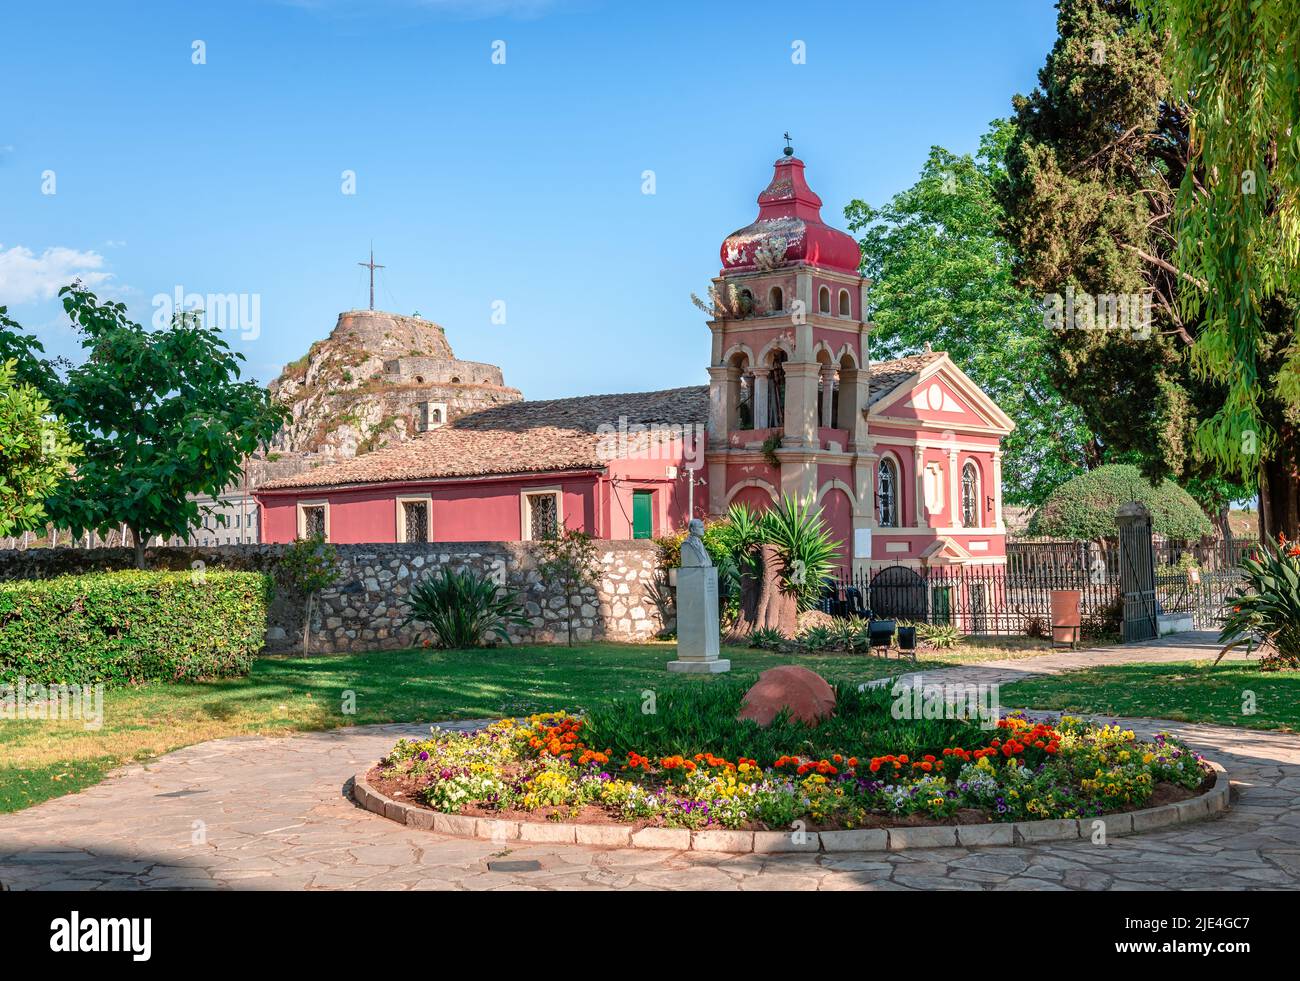 Le jardin du peuple, un petit parc public et la pittoresque église orthodoxe de Panagia Mandrakina dans la ville de Corfou, île de Corfou, Grèce. Banque D'Images